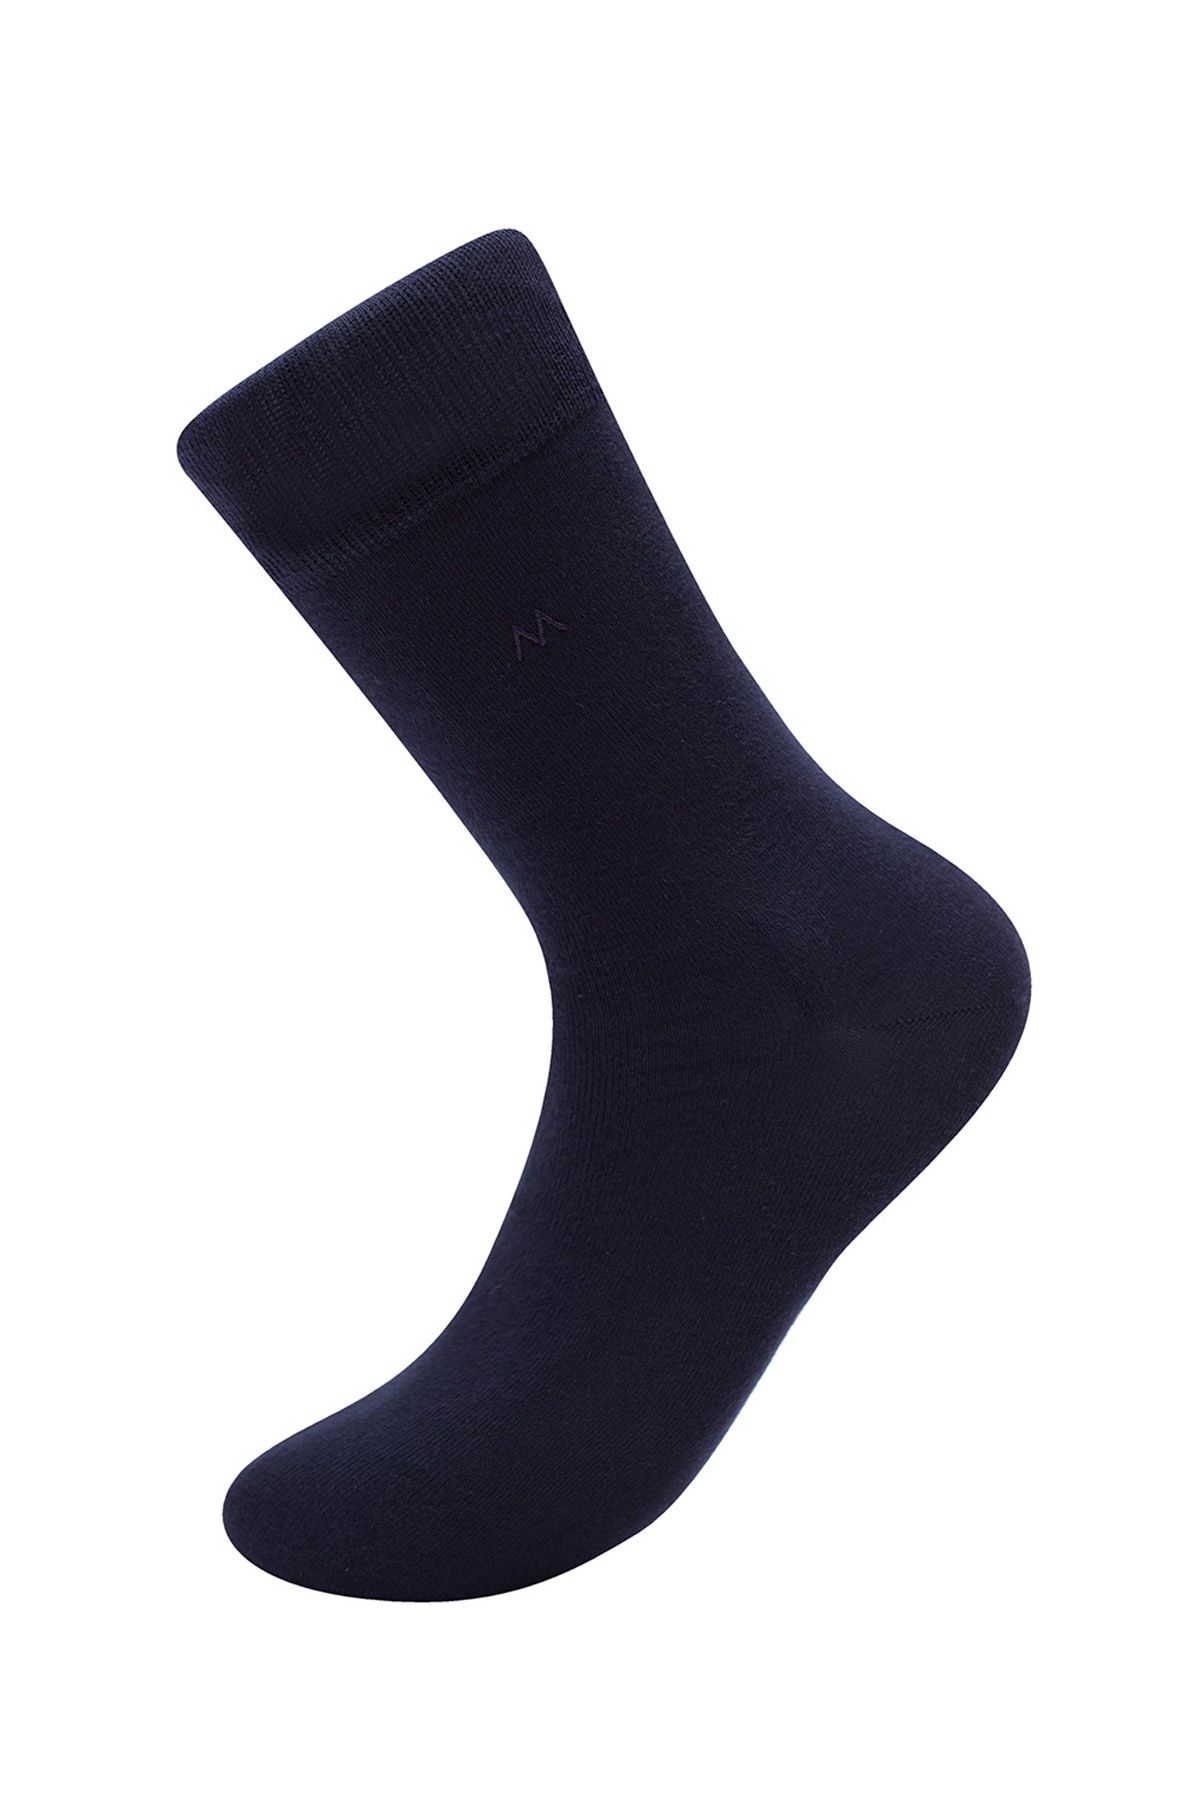 Hemington Lacivert Pamuklu Yazlık Çorap